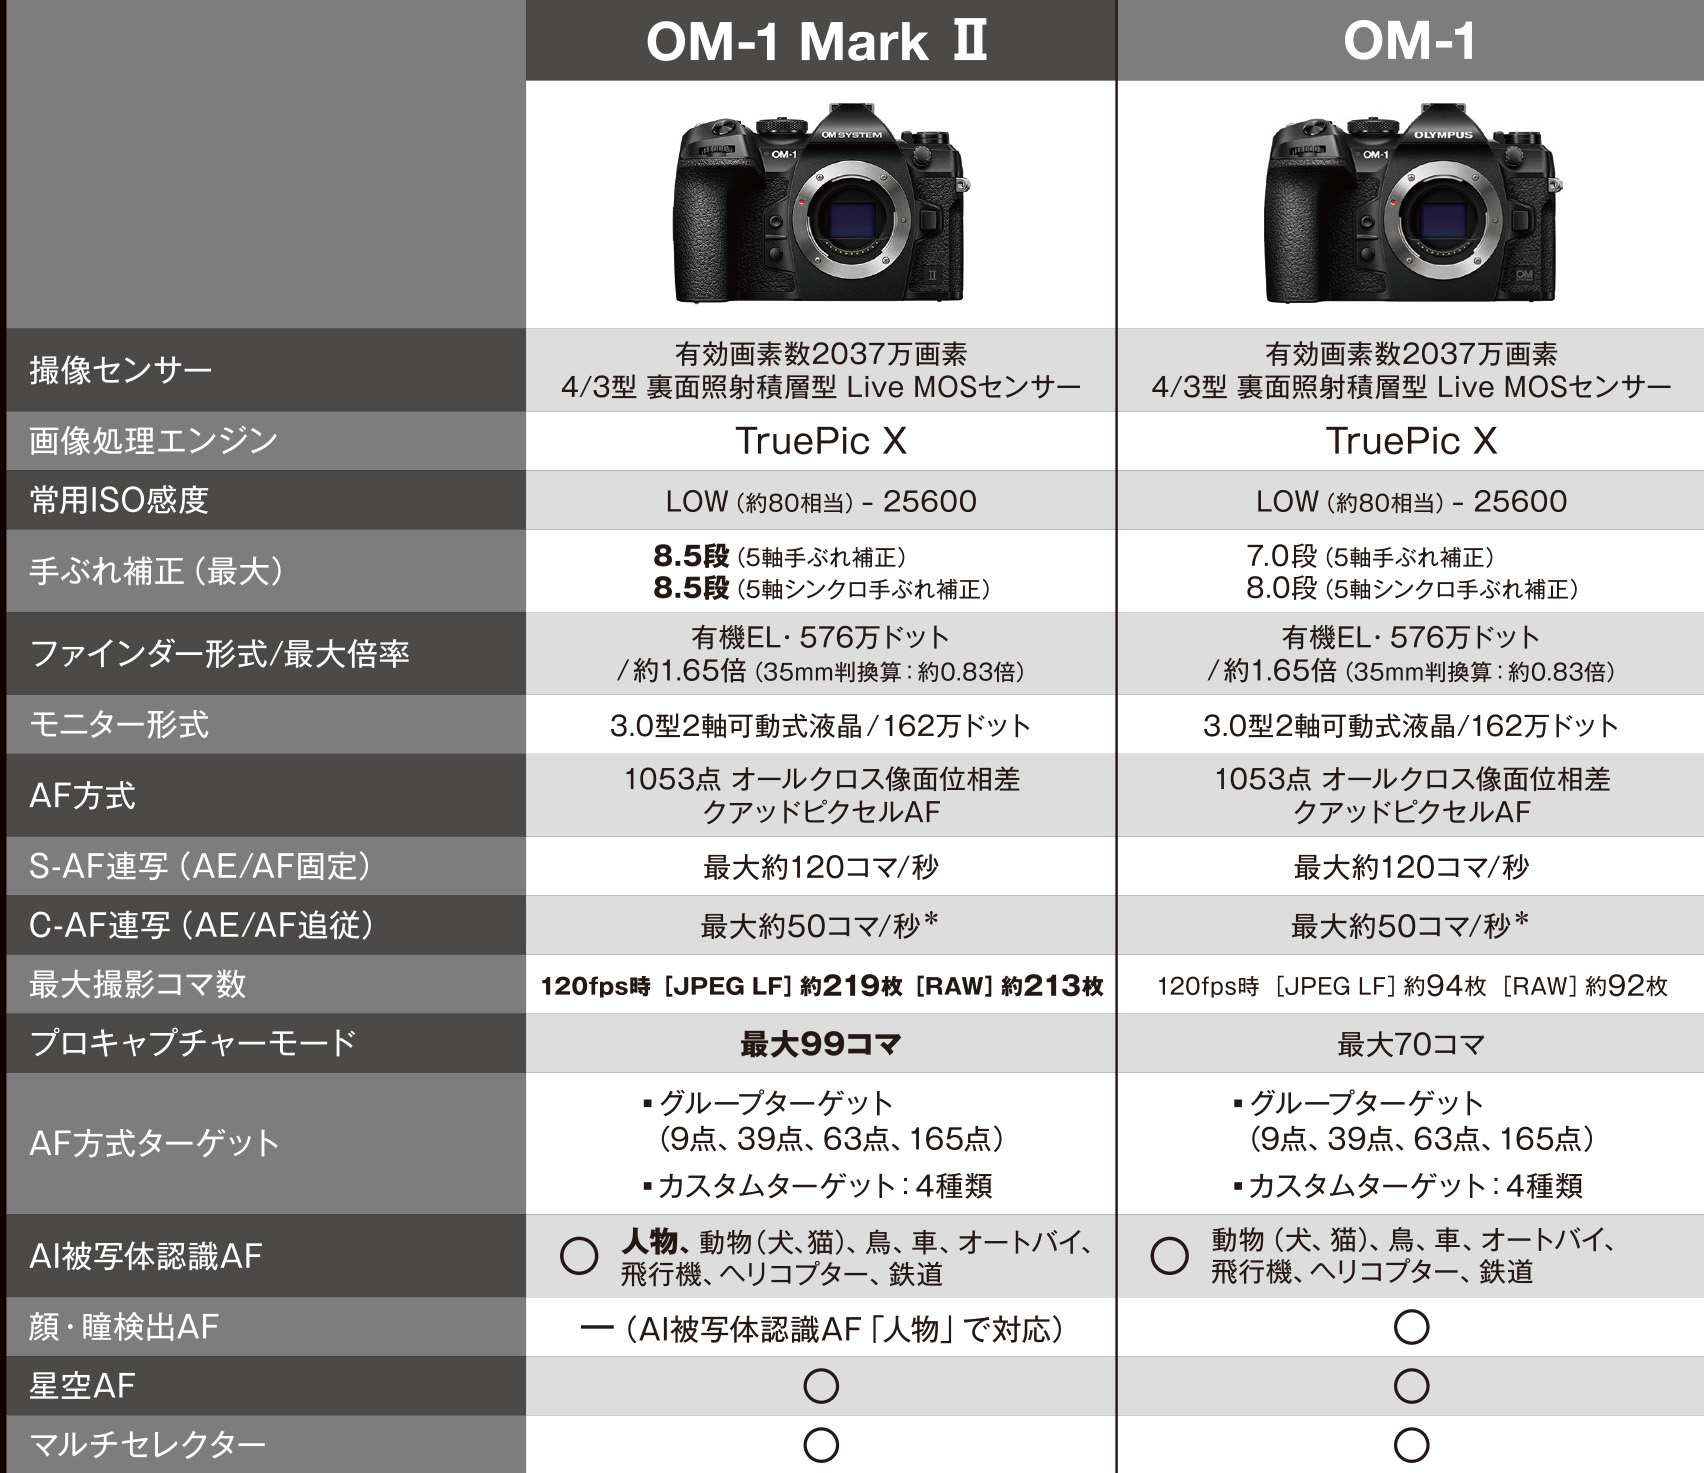 新フラッグシップモデル OM-1 Mark II 2/23発売 手ぶれ補正・AI被写体認識・バッファメモリーが強化、ライブGND搭載